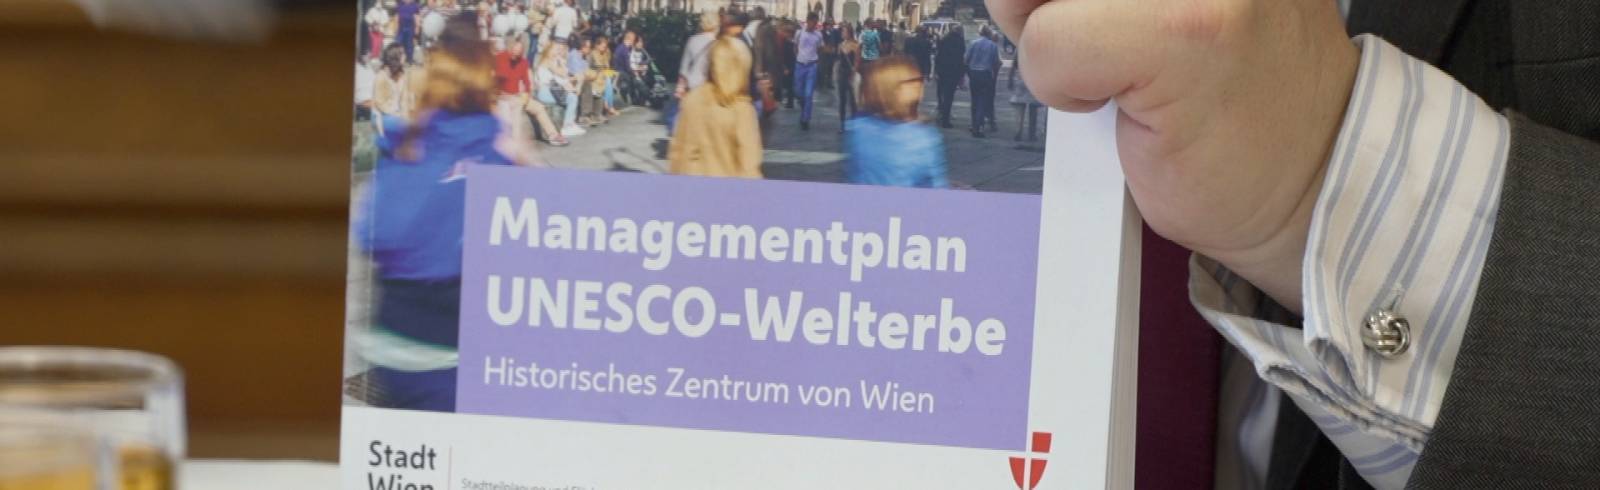 Managementplan für UNESCO-Welterbe